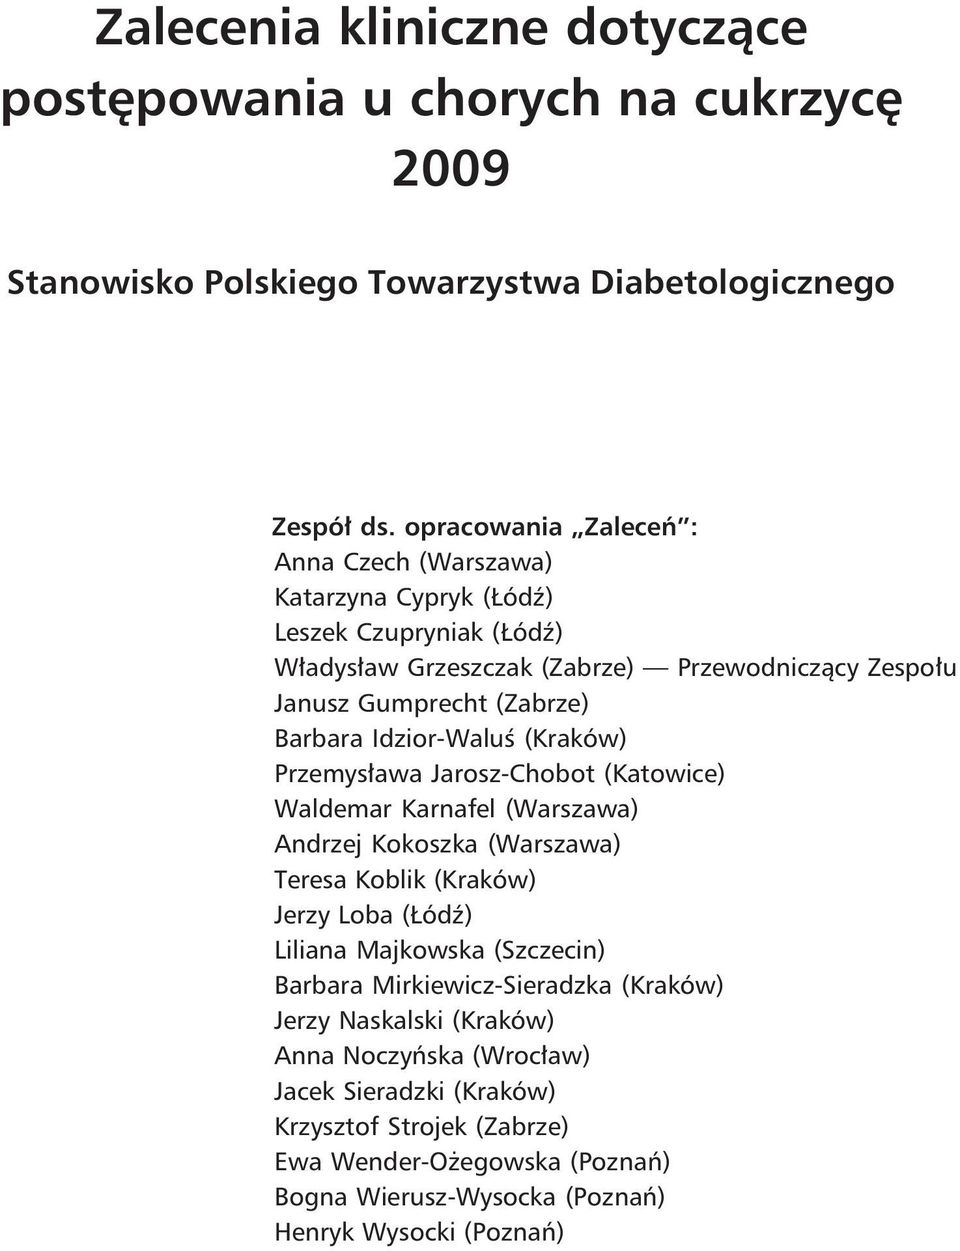 Idzior-Waluś (Kraków) Przemysława Jarosz-Chobot (Katowice) Waldemar Karnafel (Warszawa) Andrzej Kokoszka (Warszawa) Teresa Koblik (Kraków) Jerzy Loba (Łódź) Liliana Majkowska